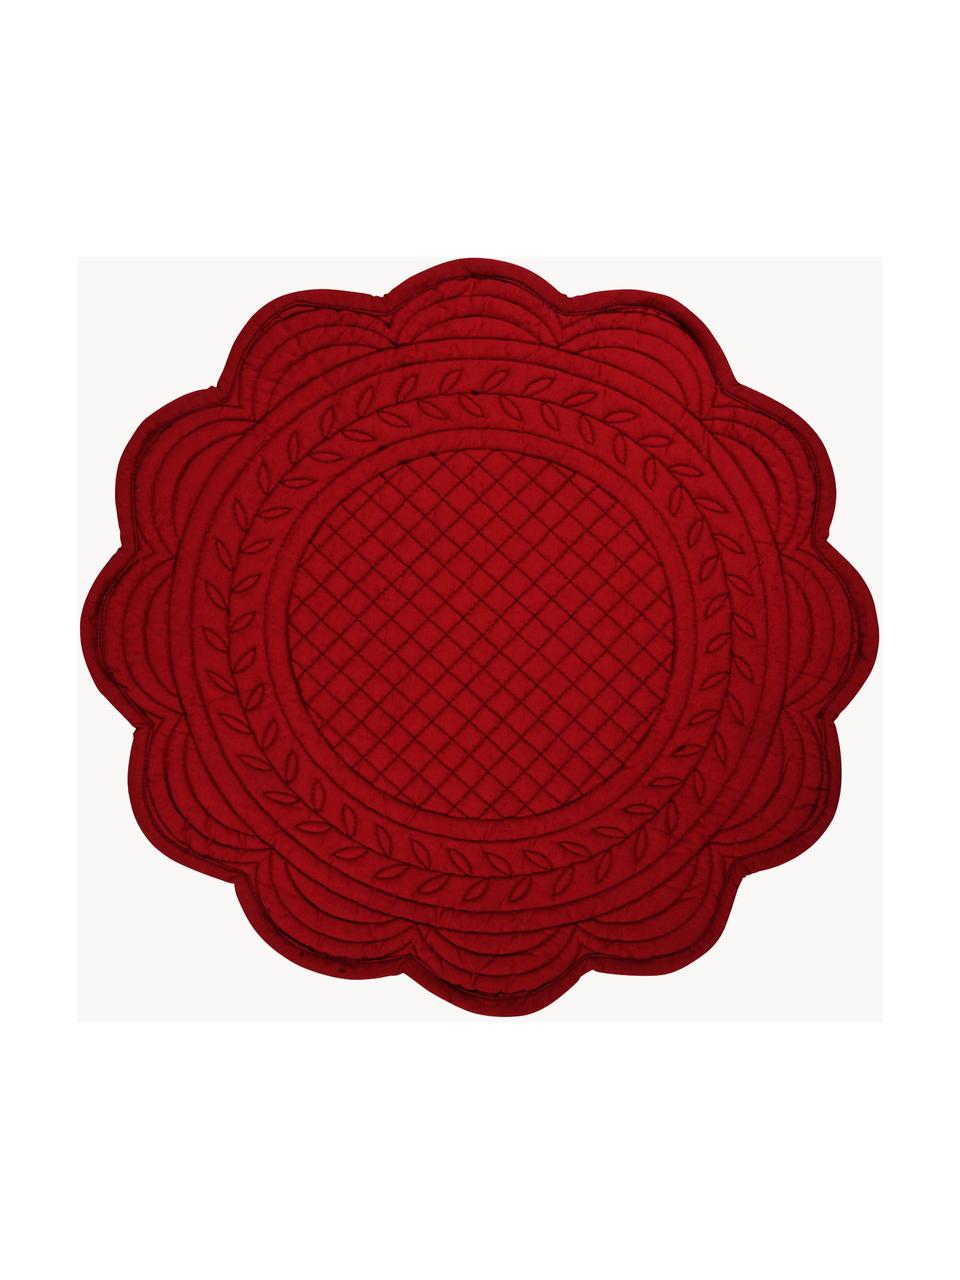 Okrągła podkładka Boutis, 2 szt., 100% bawełna, Czerwony, Ø 43 cm